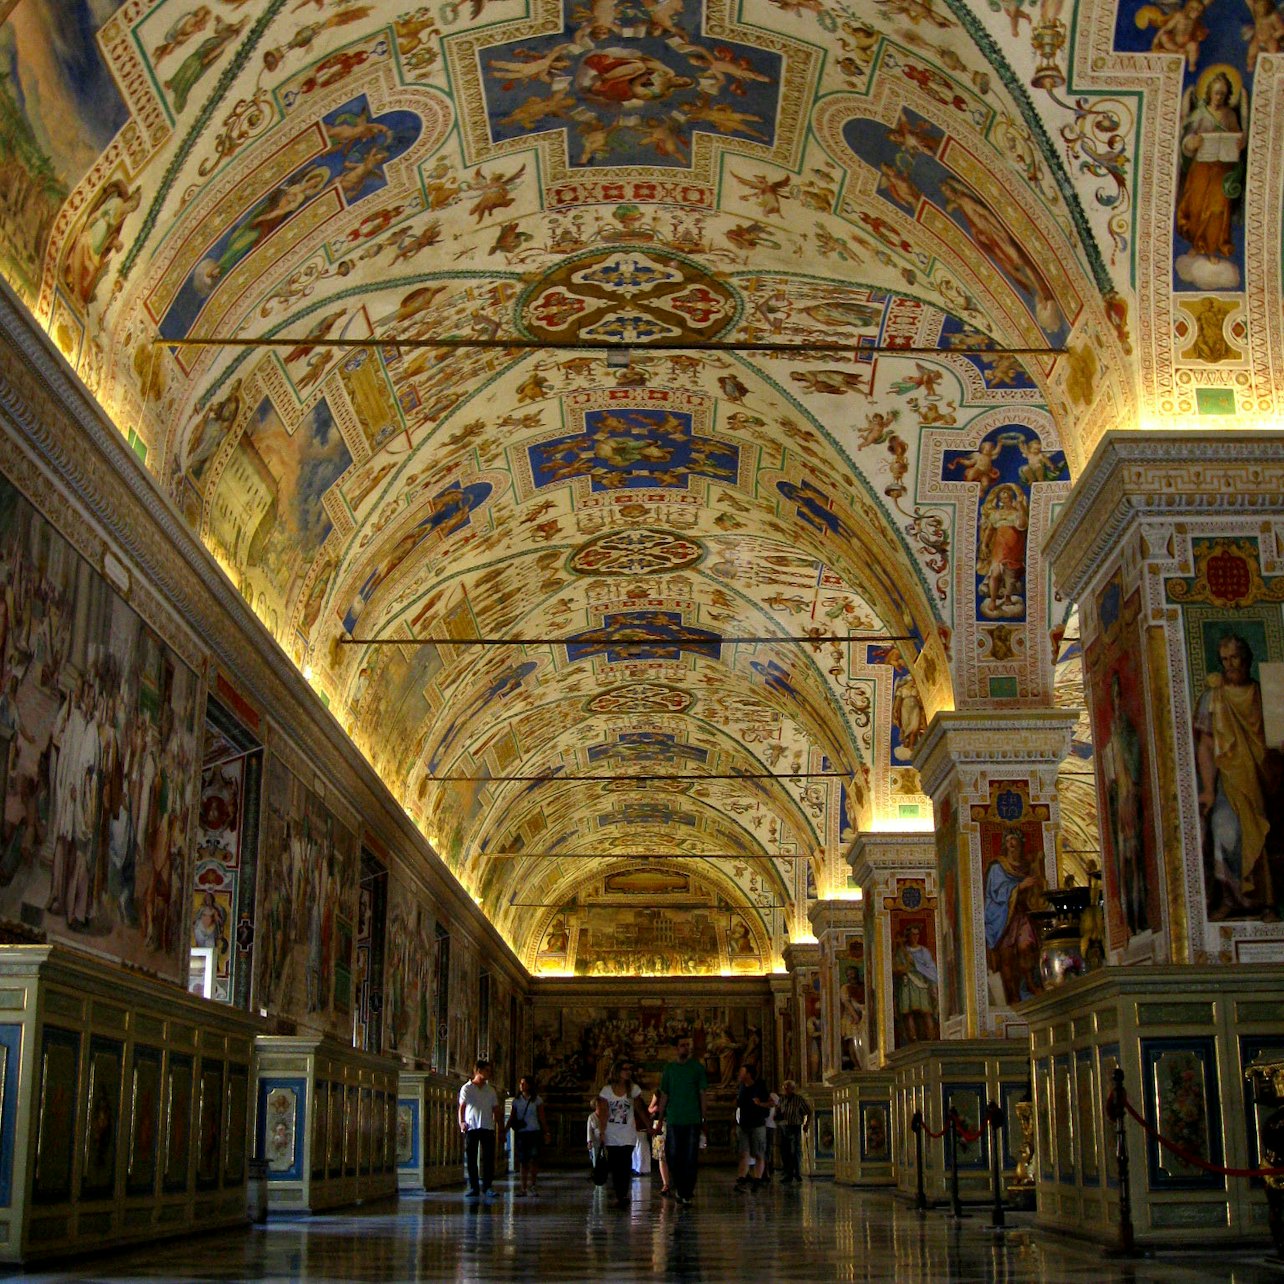 Museos Vaticanos y Capilla Sixtina: Sáltate la cola con audioguía opcional - Alojamientos en Roma